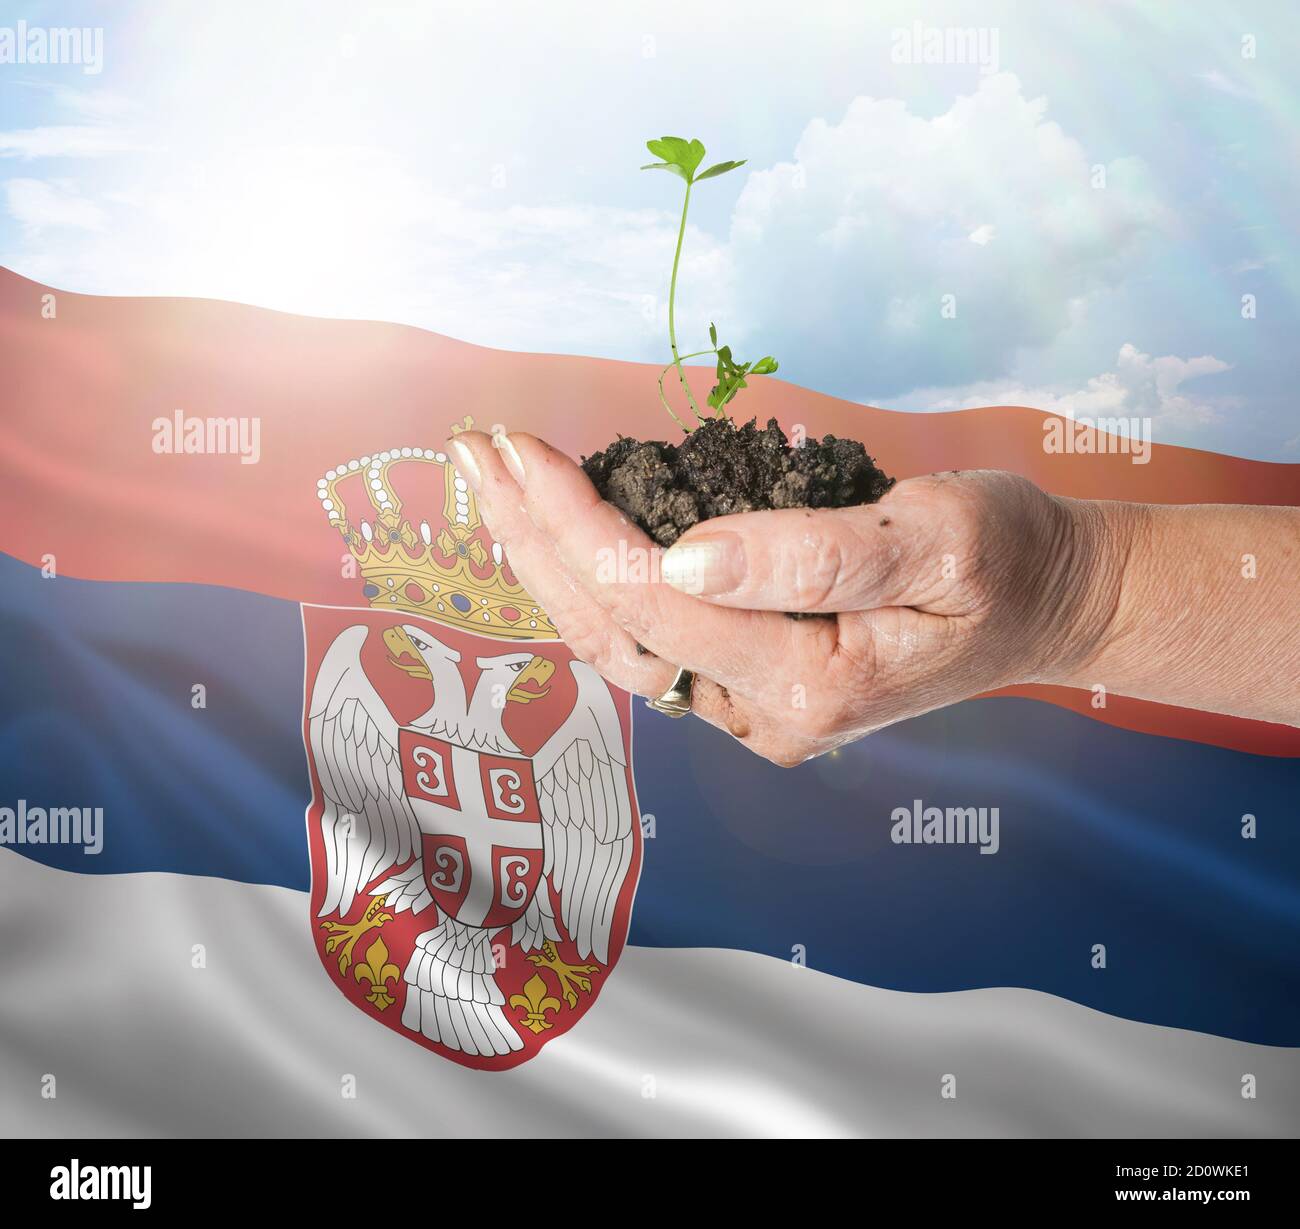 Serbia crecimiento y nuevo comienzo. Concepto de energía renovable verde y ecología. Mano sosteniendo planta joven. Foto de stock